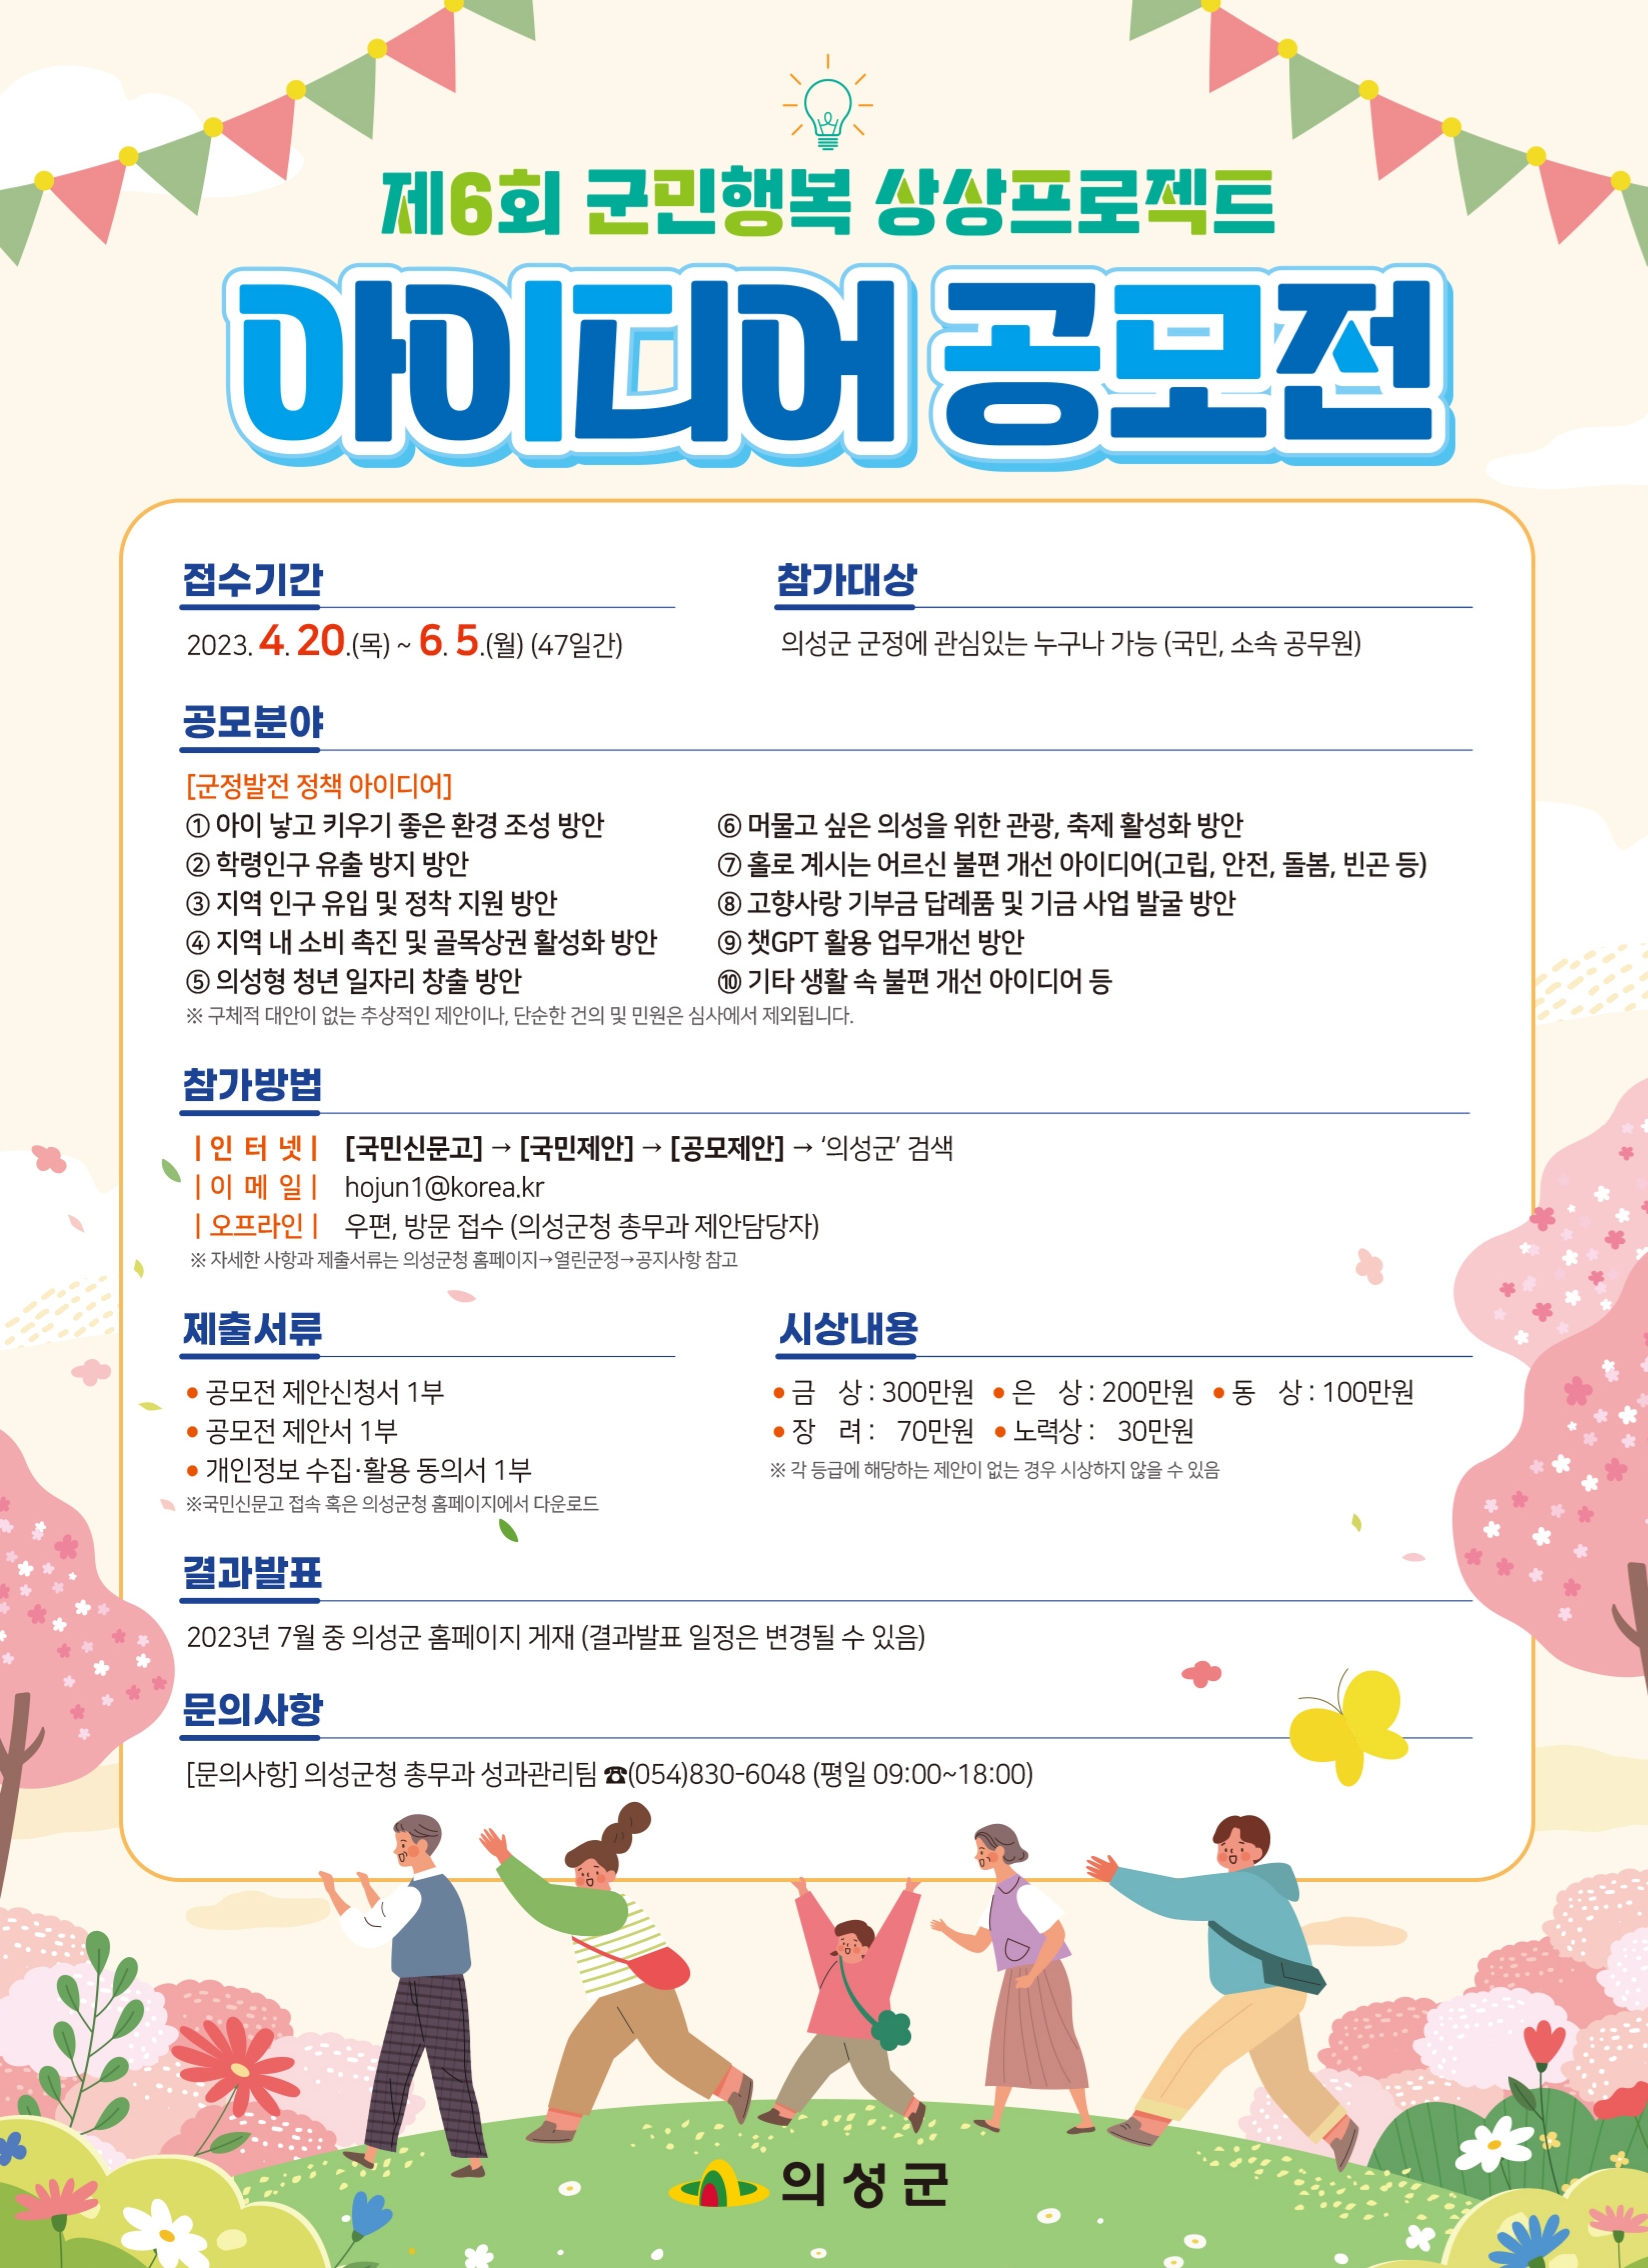 의성군, 군민행복 상상프로젝트 아이디어 공모전 개최 